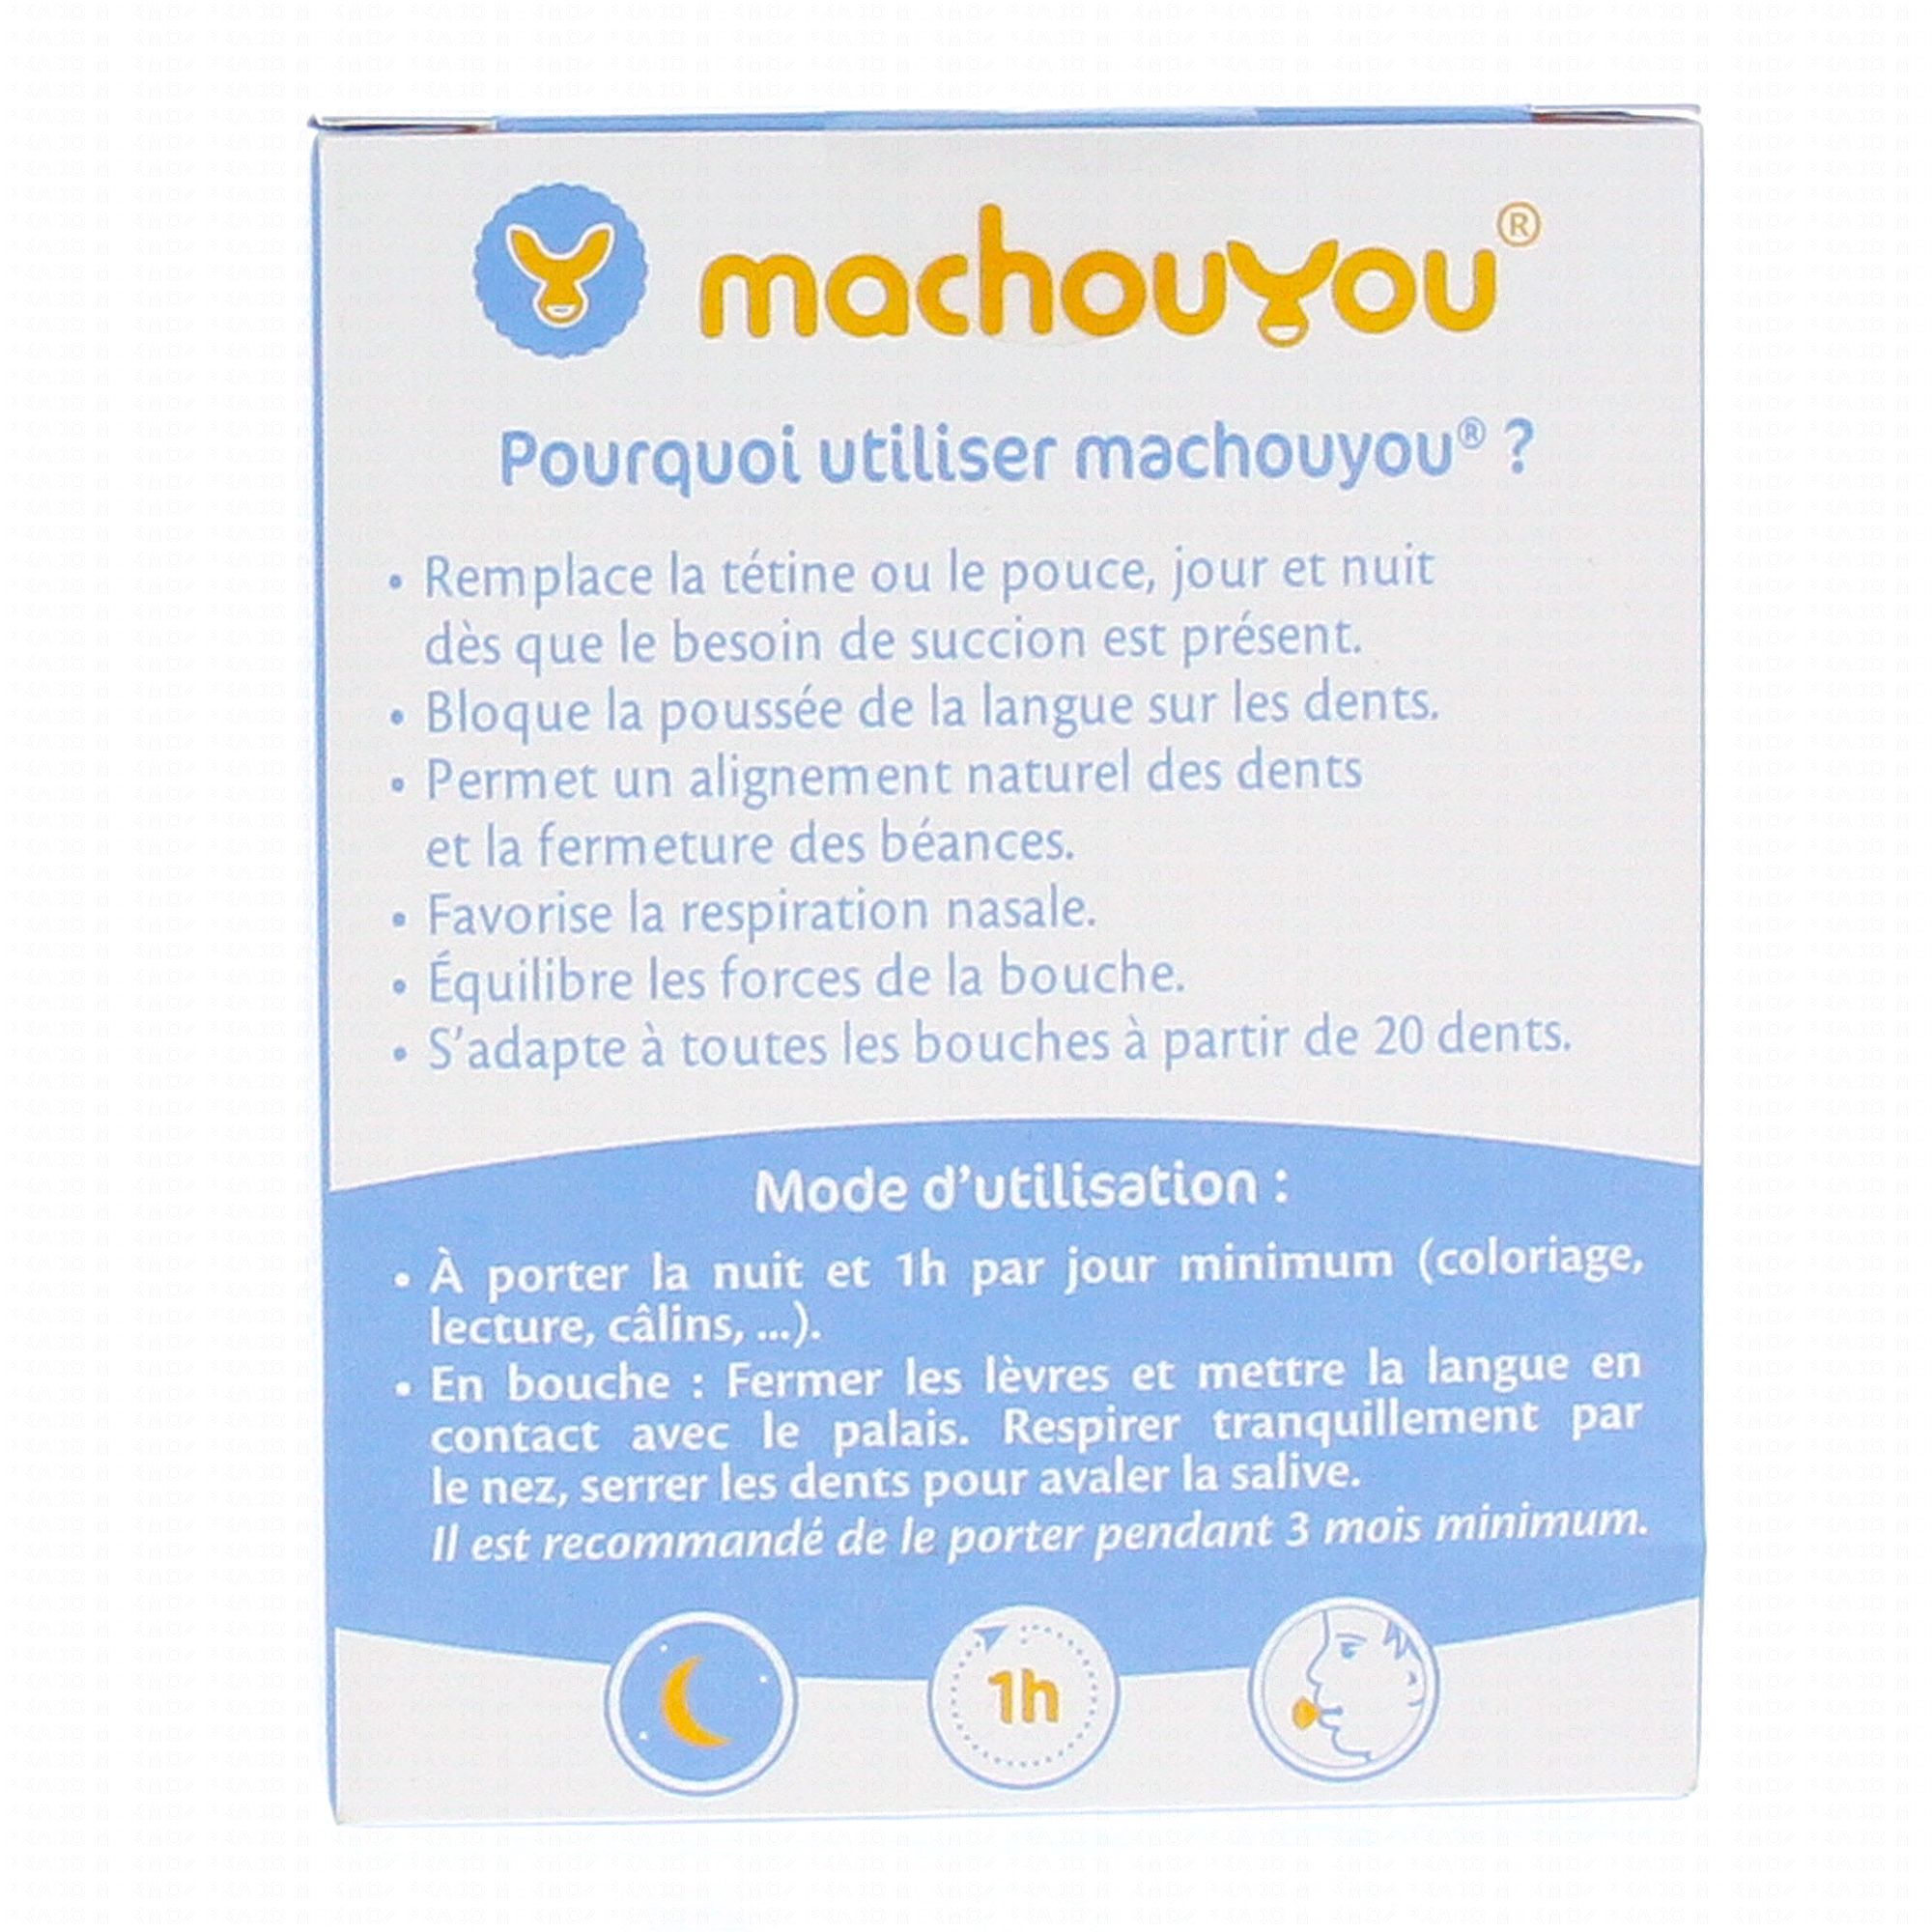 Offre d'implantation Premium - Machouyou